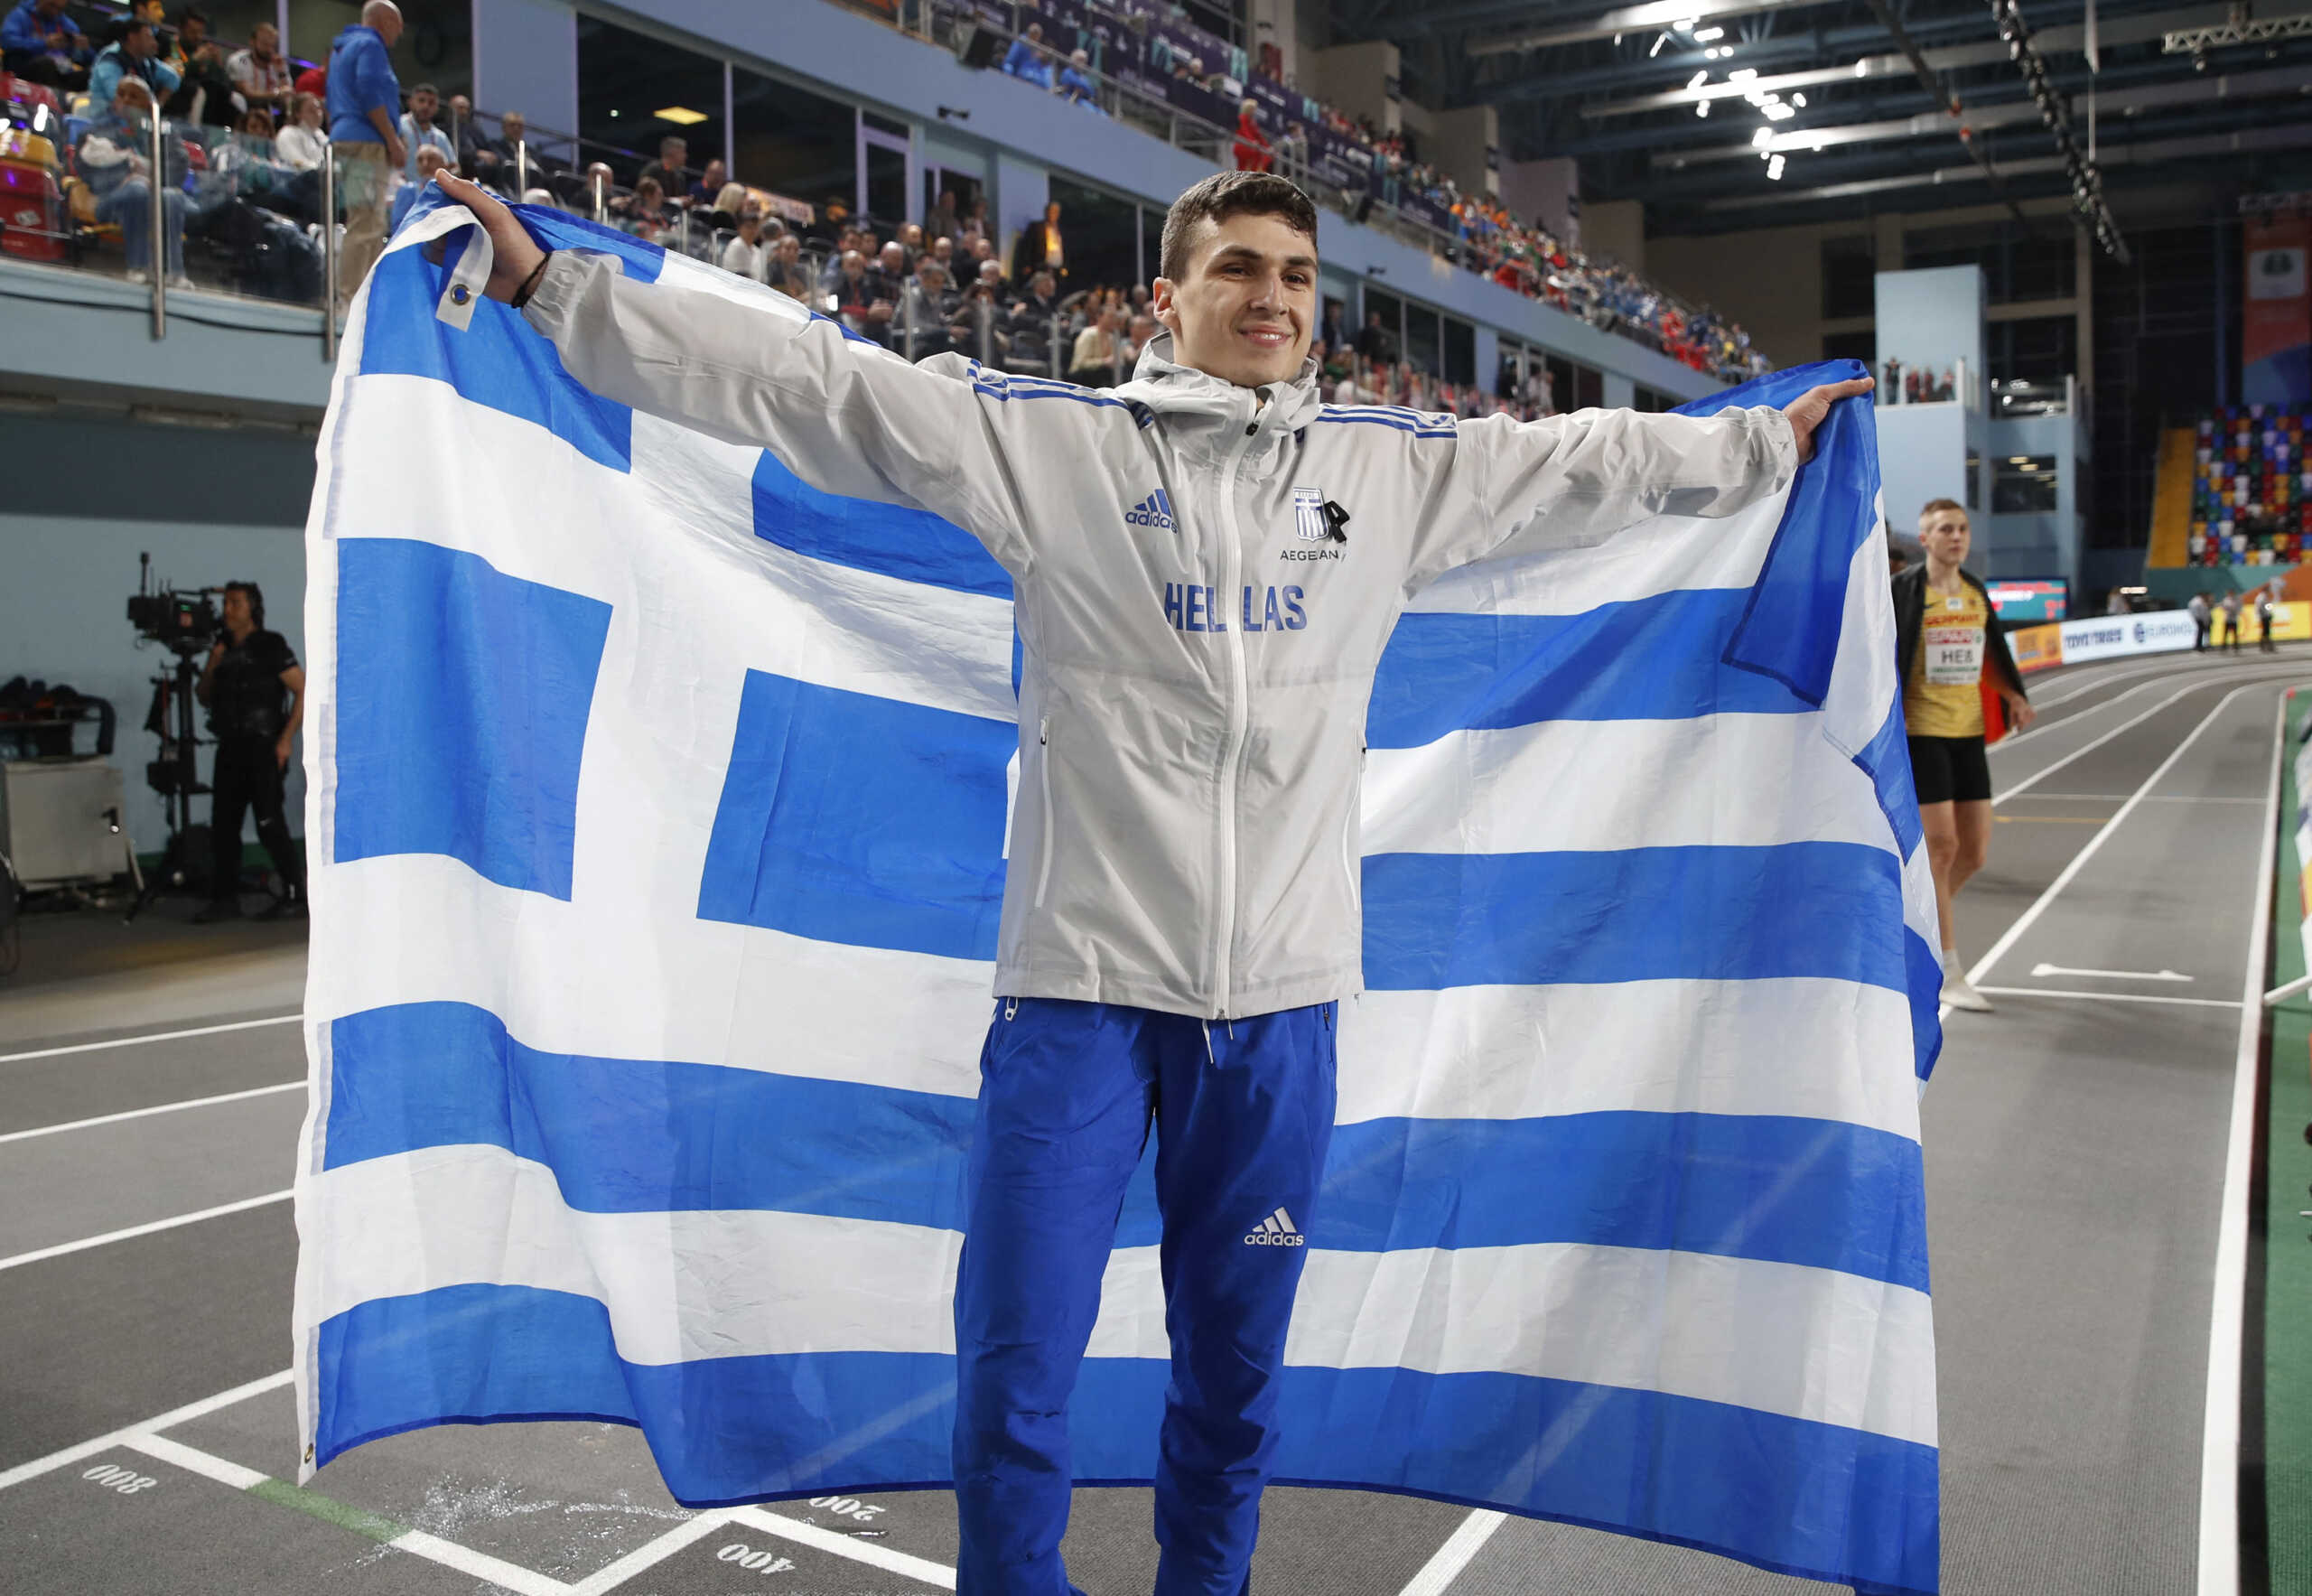 Ο Νίκος Ανδρικόπουλος κατέκτησε το ασημένιο μετάλλιο στο τριπλούν στο ευρωπαϊκό πρωτάθλημα κλειστού στίβου